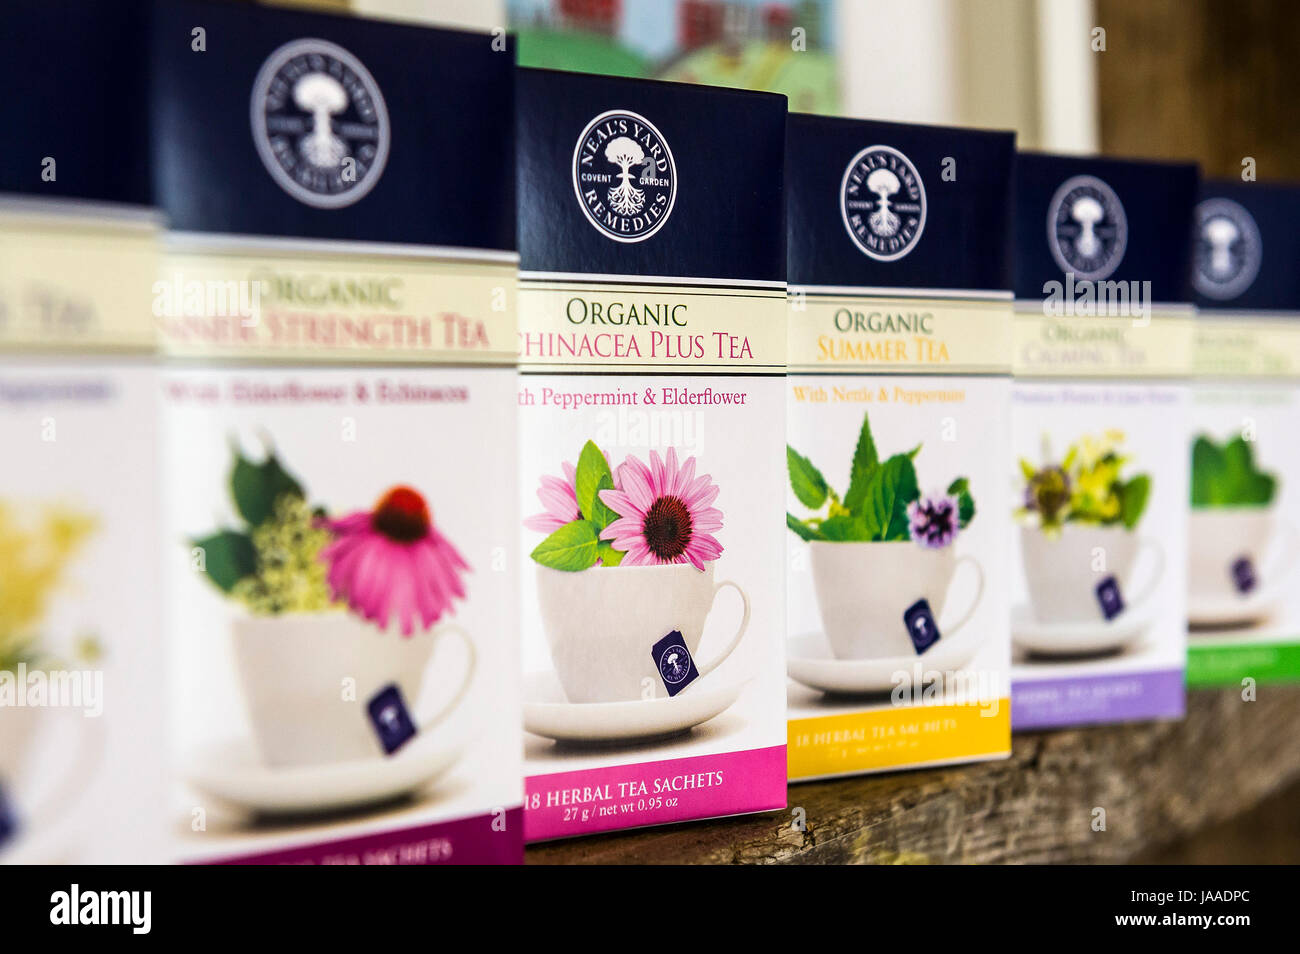 Scatole di cantiere Neals organico tè alle erbe in vendita. Foto Stock